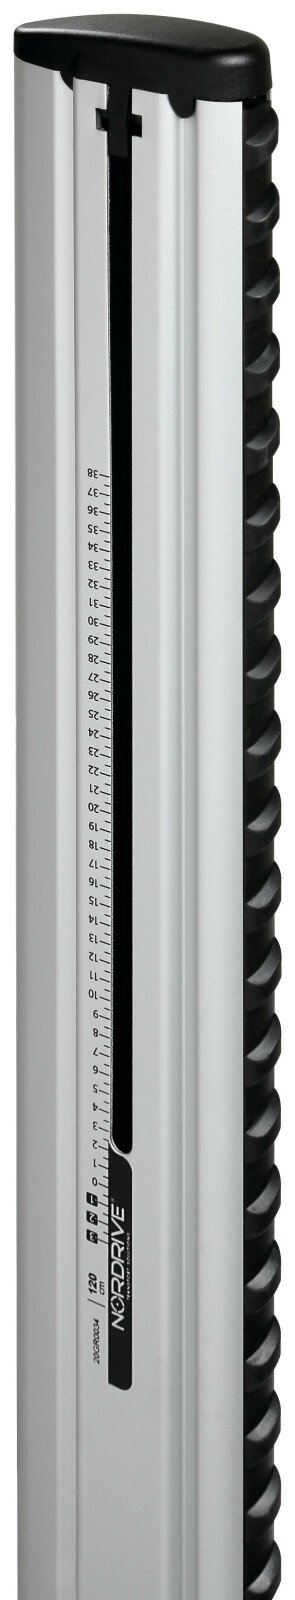 Silenzio aluminium csomagtartórúd szett, 2 db - XL - 140 cm thumb